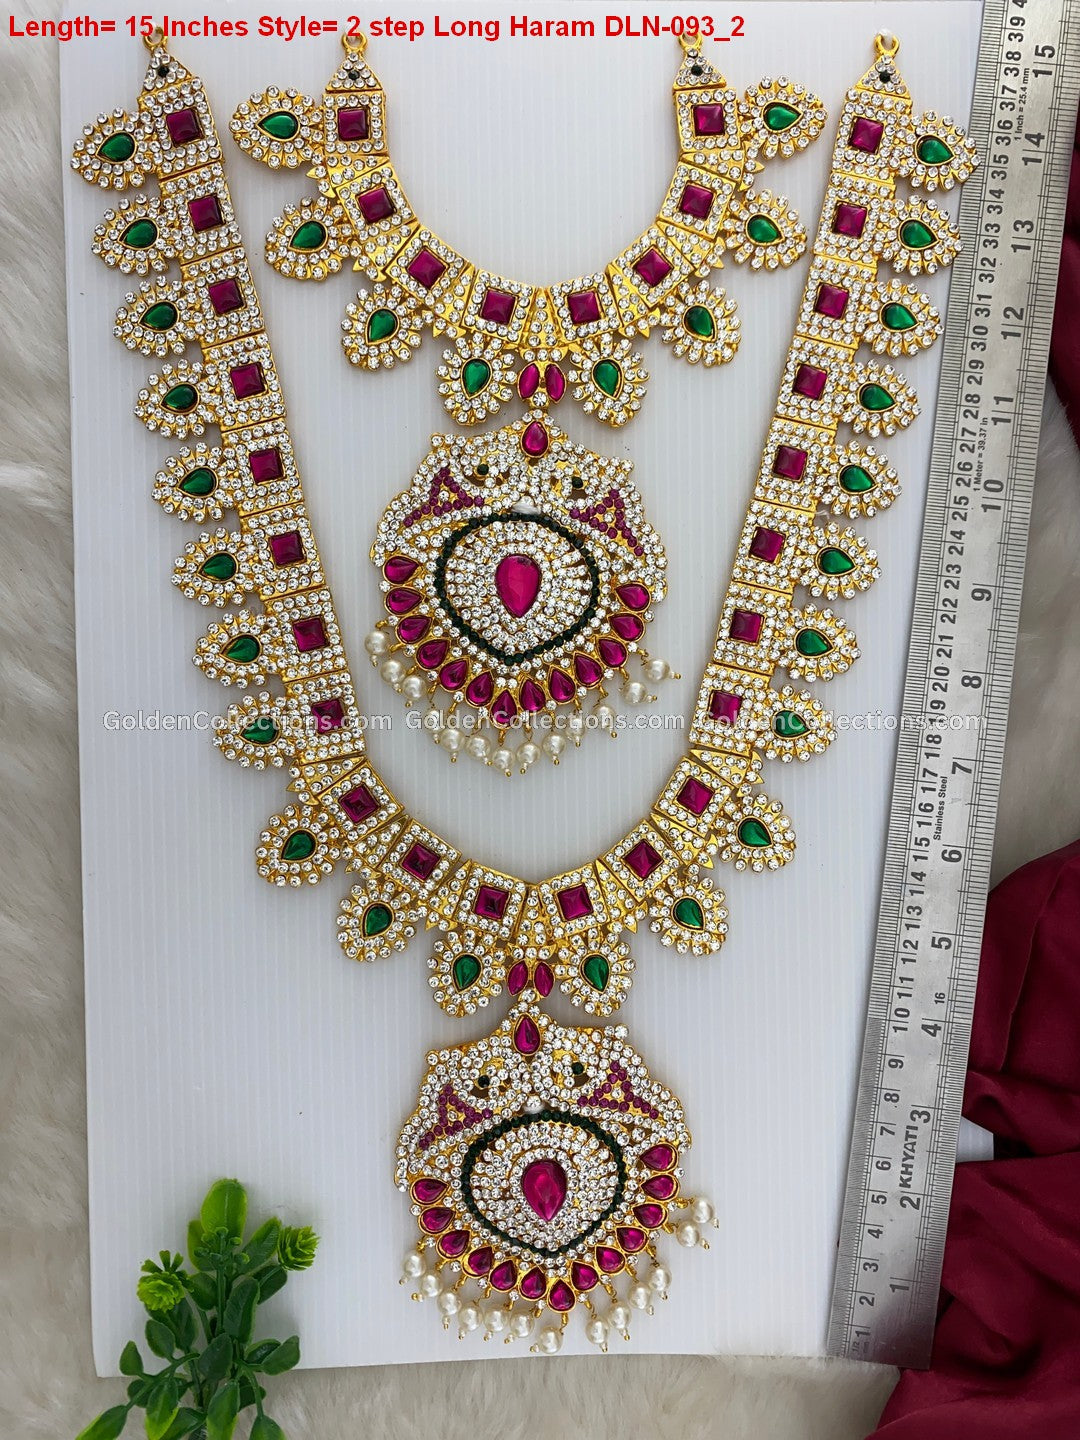 Divine Elegance: Shop Deity Pendant Necklaces DLN-093 2